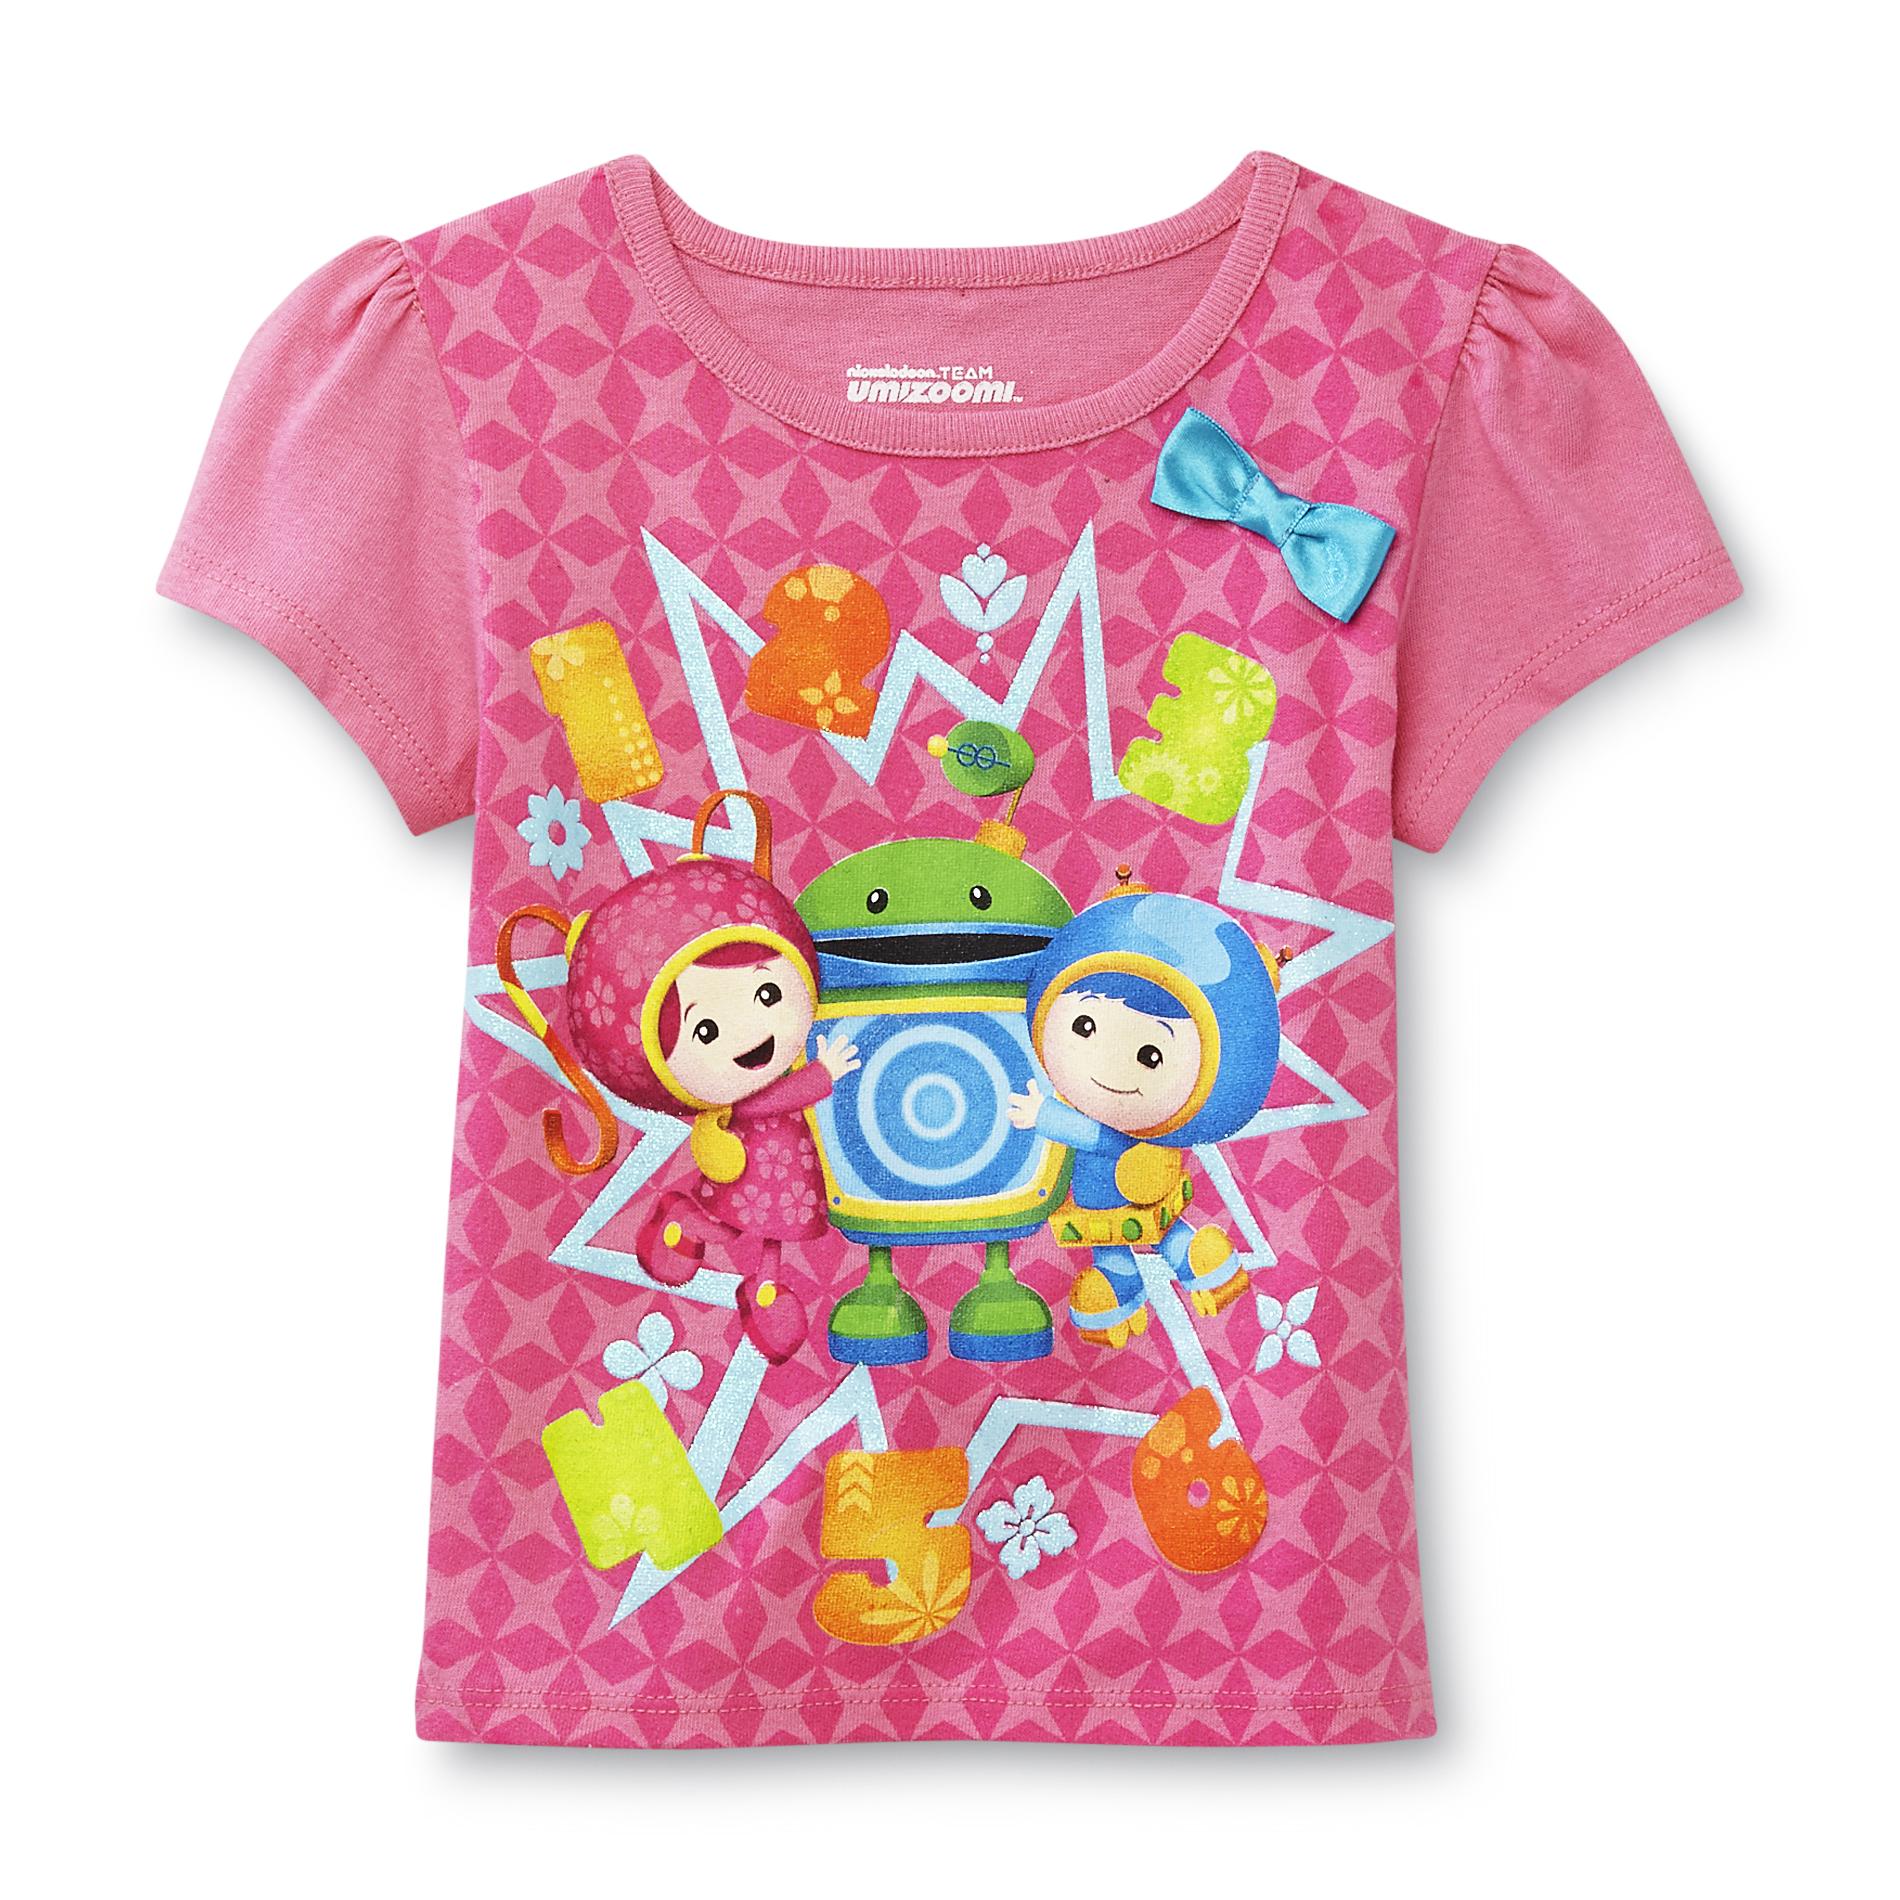 Nickelodeon Team Umizoomi Toddler Girls Graphic T Shirt   Baby   Baby